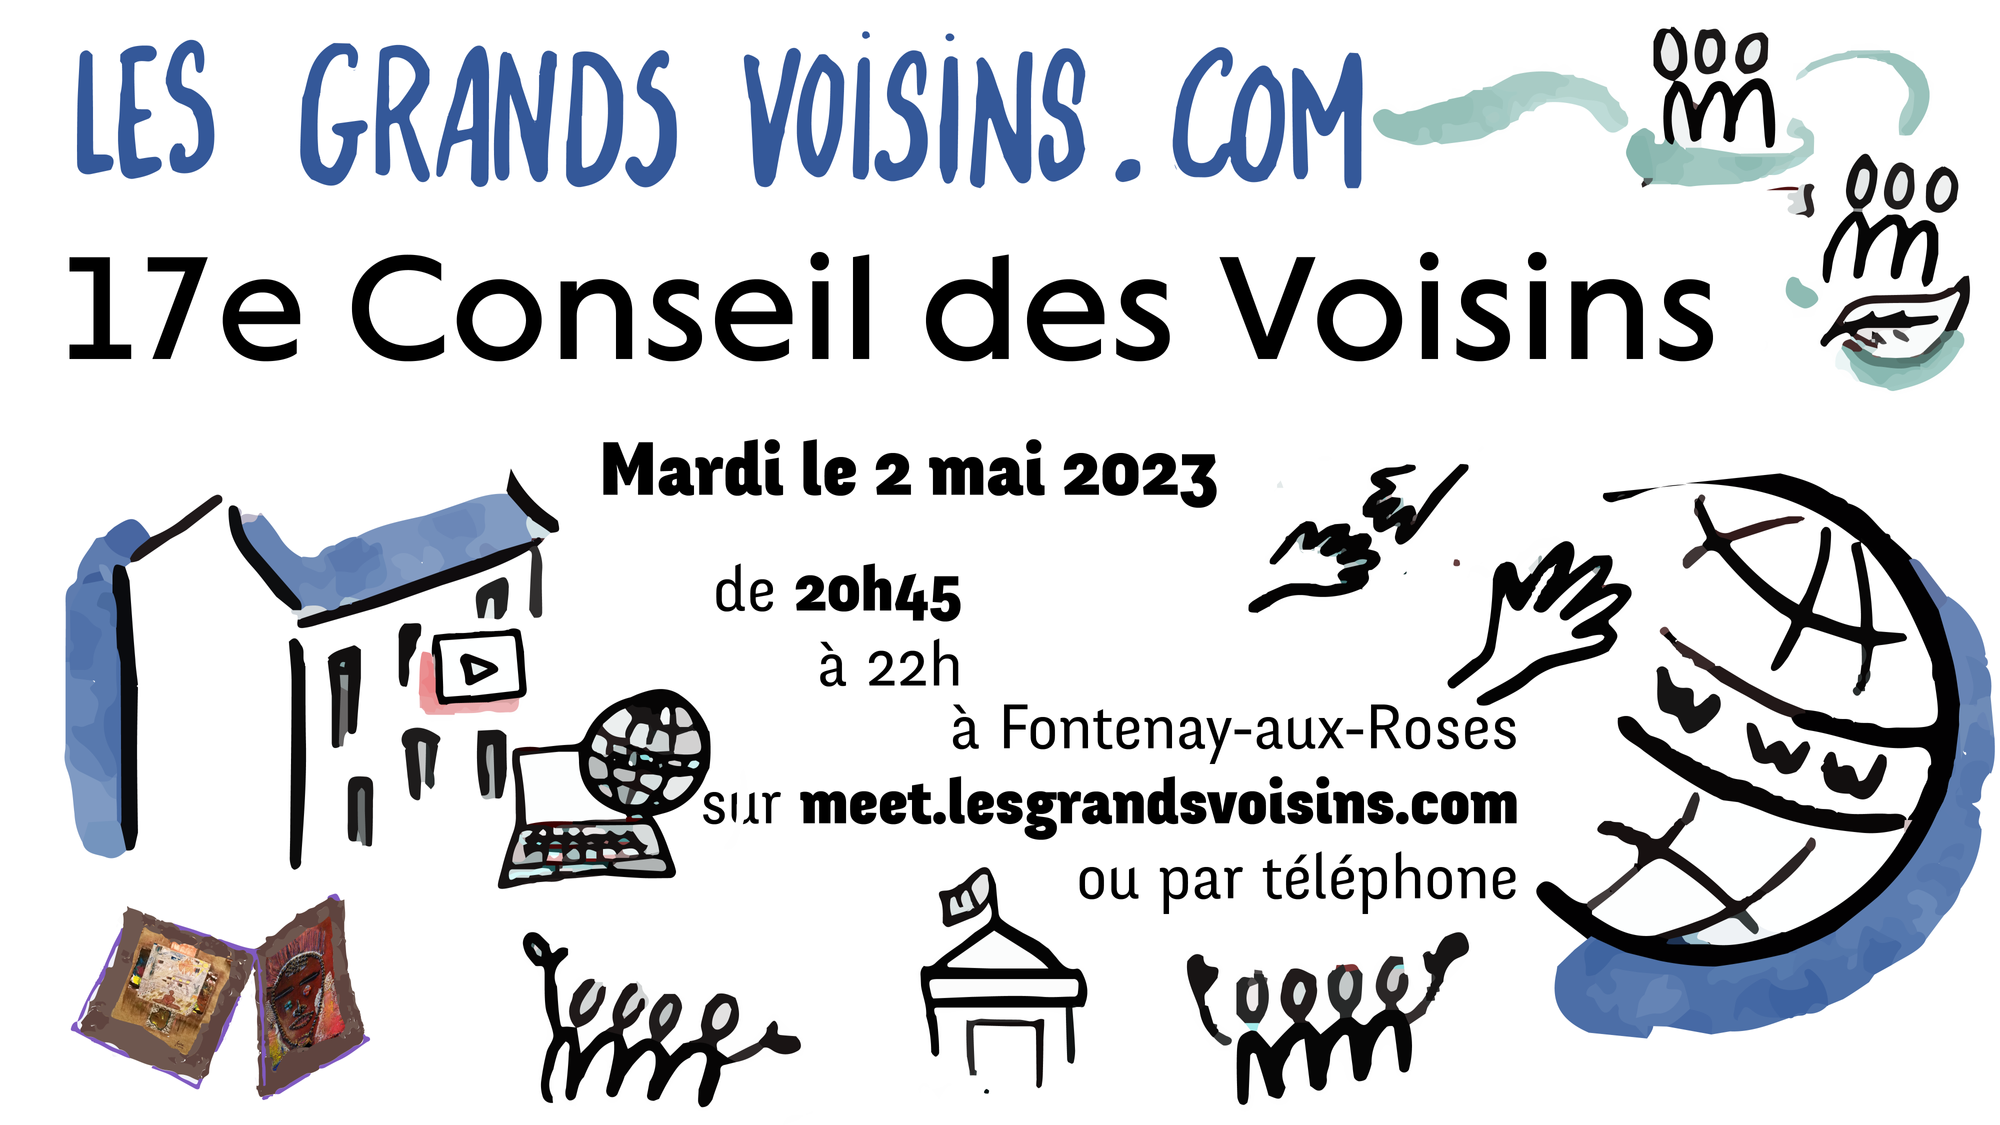 17e Conseil des Voisins - 2 mai 2023 - CR